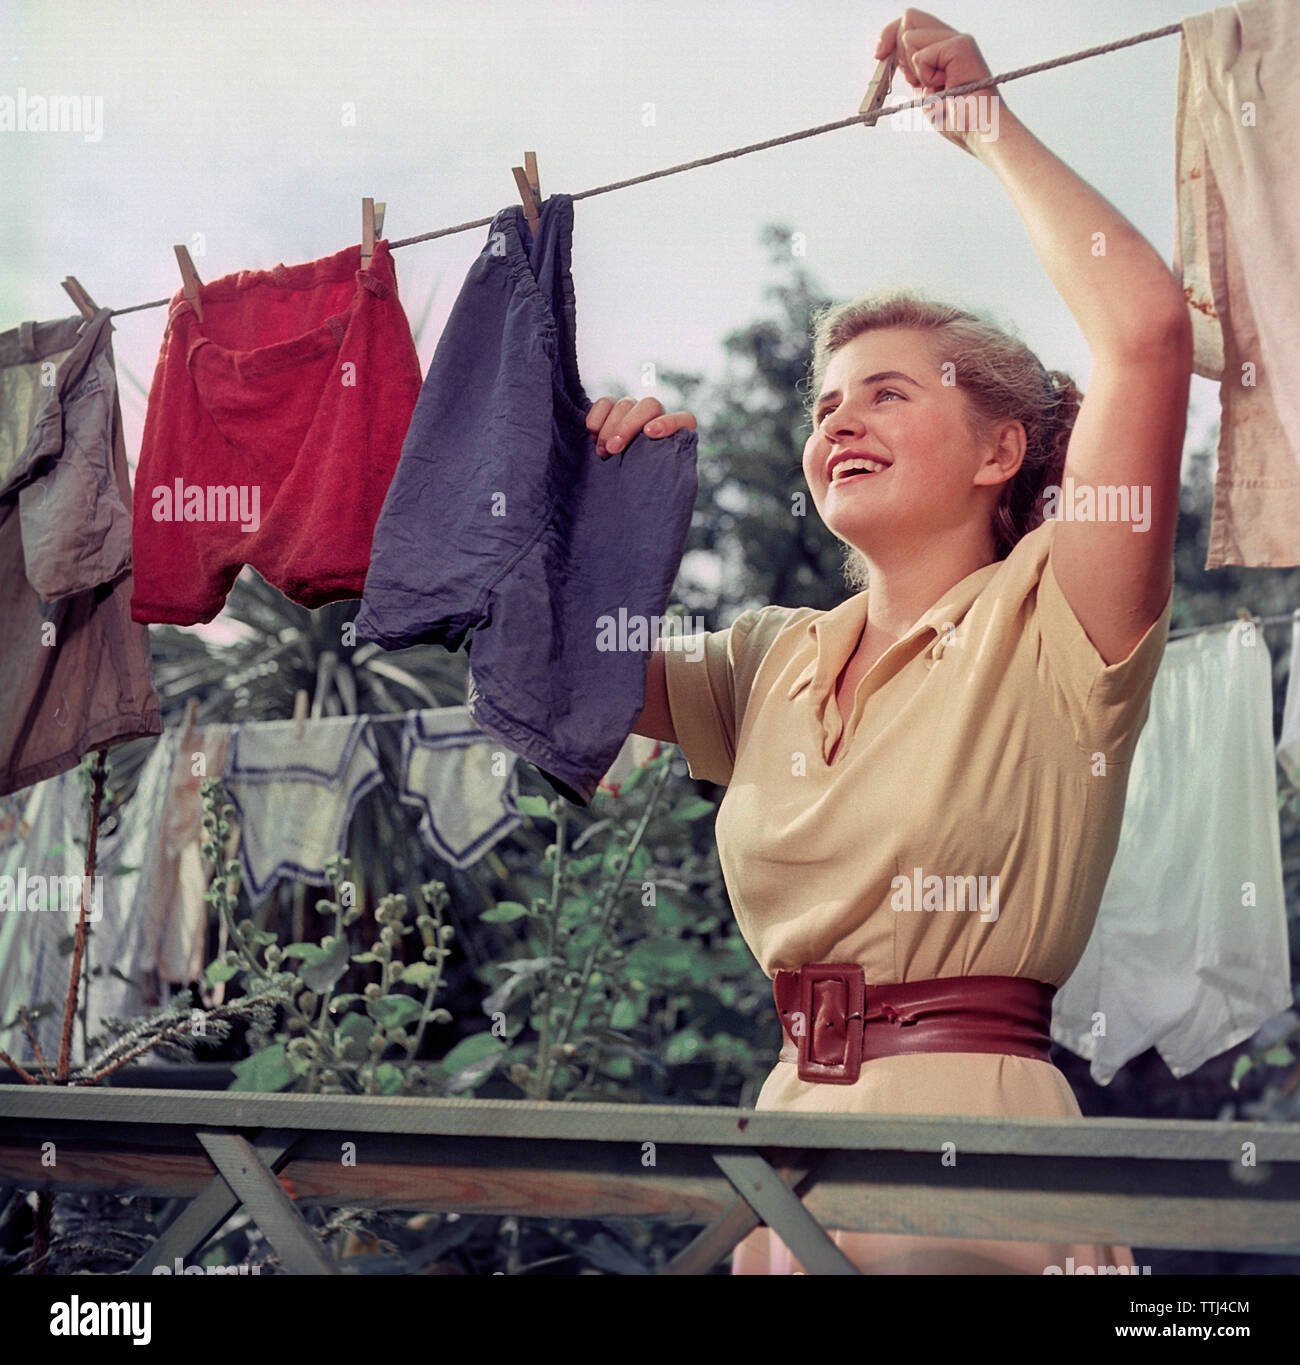 Faire la lessive dans les années 1950. Une jeune femme est d'accrocher le linge propre et humide pour sécher. La Suède 1950 ref BV92-10 CE232343 Banque D'Images